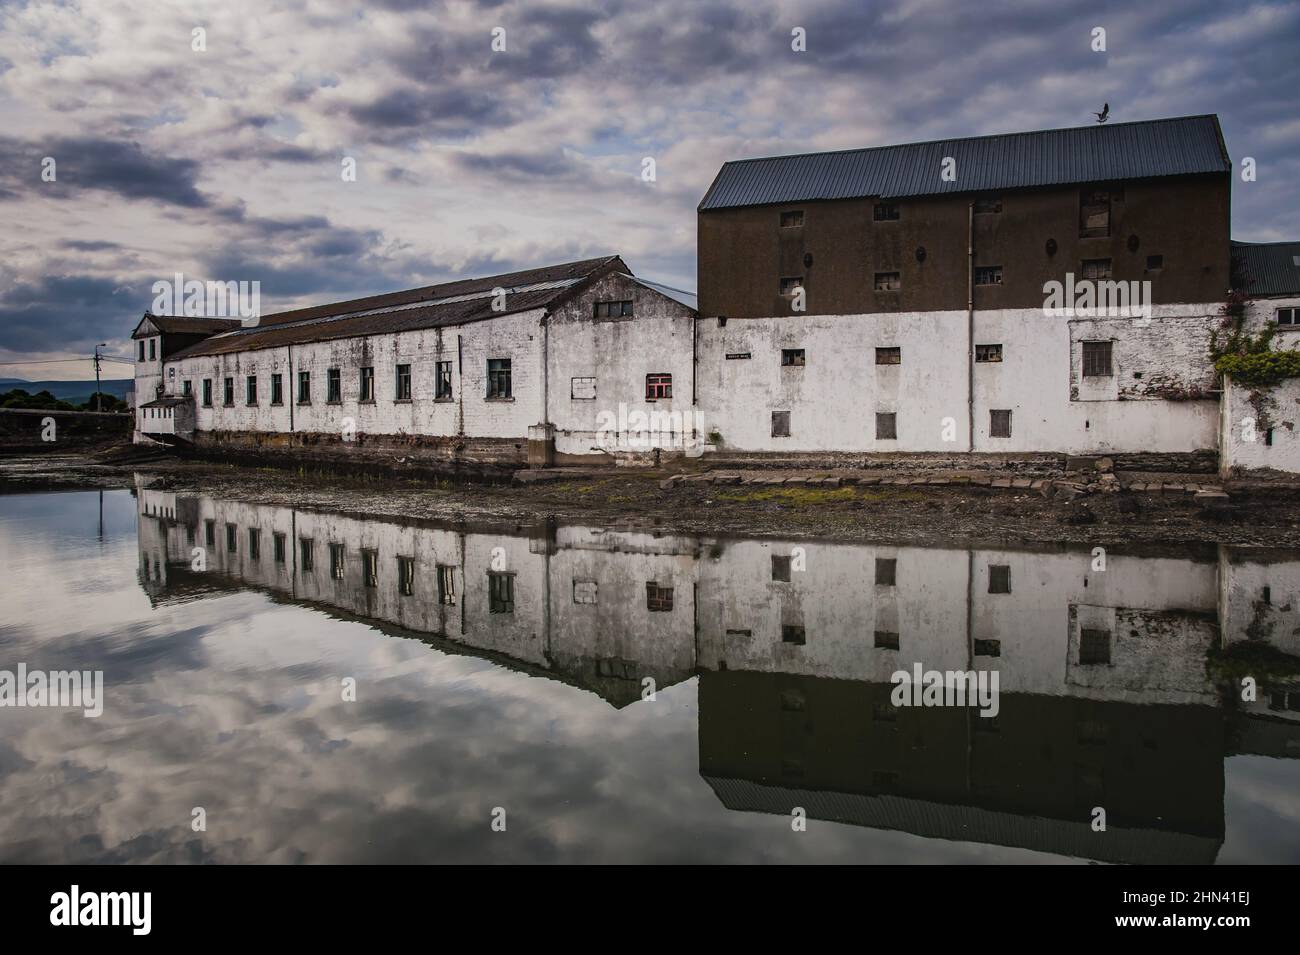 Spettrale fiume Vartry nel porto industriale di Wicklow città con vecchi edifici portuali che riflettono sul porto tranquillo, acqua piatta o inquietante abbandonato villaggio porto Foto Stock